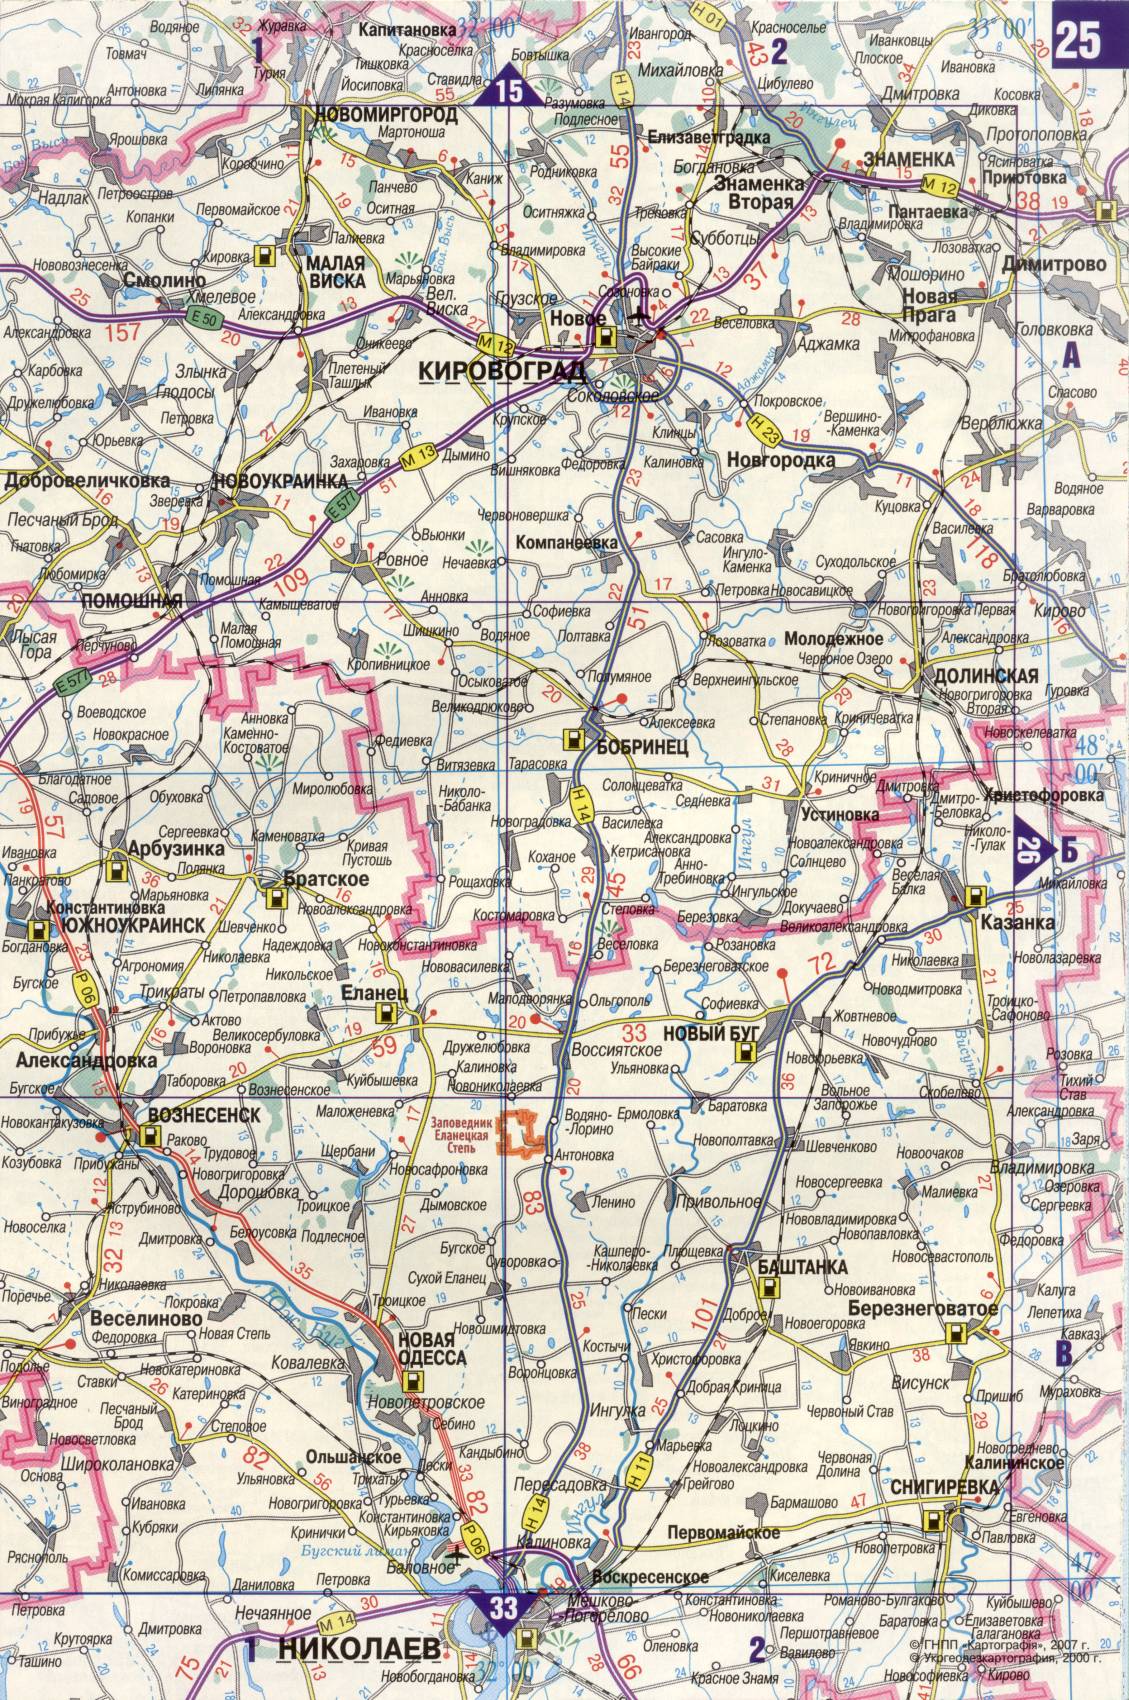 Karte der Ukraine. Detaillierte Straßenkarte der Ukraine avtomobilnog Satin. kostenlos herunterladen, F2